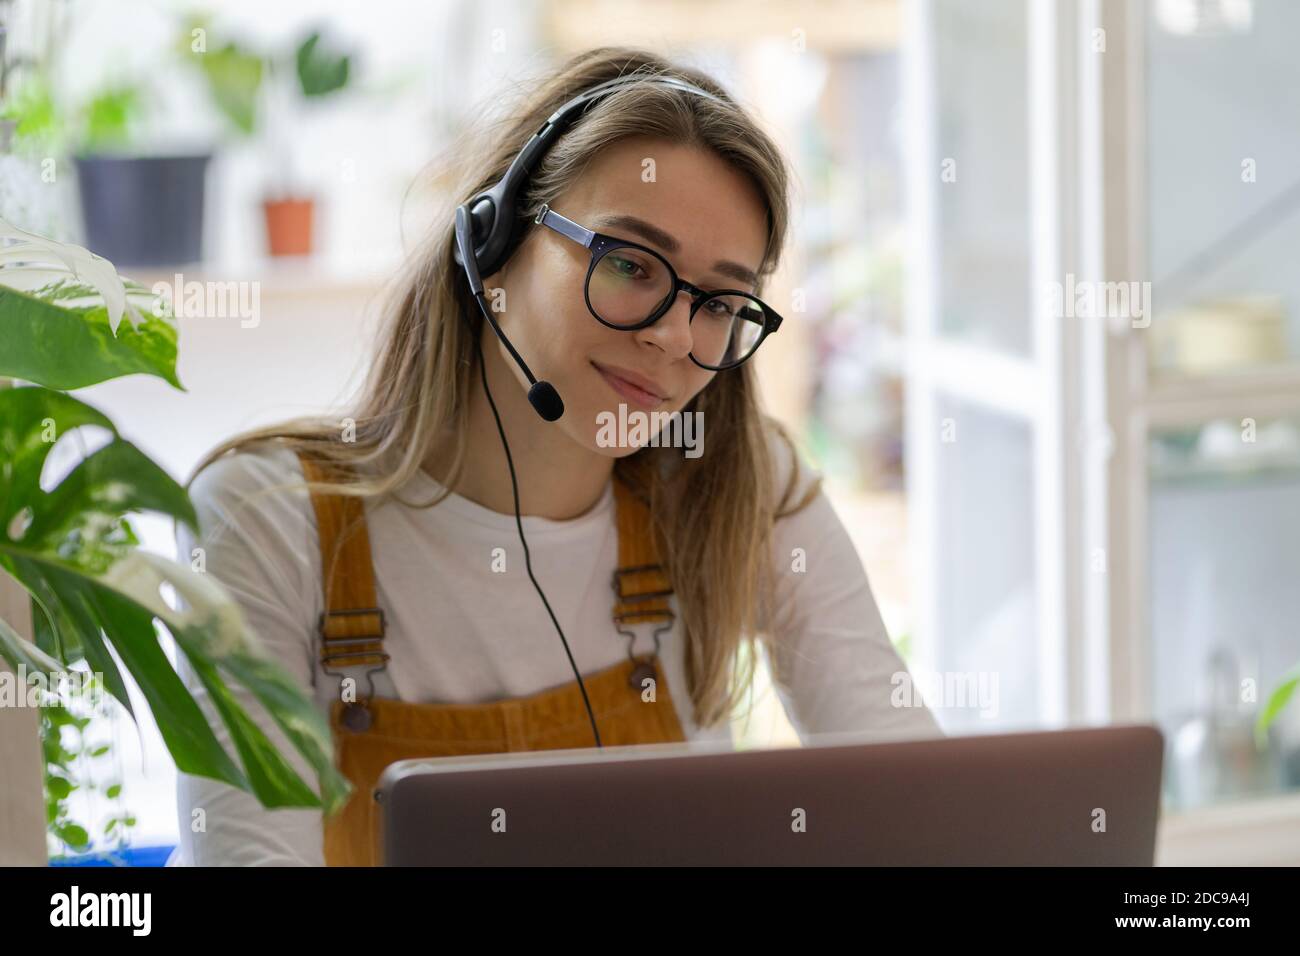 La donna millennial del giardiniere indossa le cuffie usando il laptop, comunica con i clienti, guarda il webinar o videoconferenza in streaming, lavora a distanza da casa Foto Stock